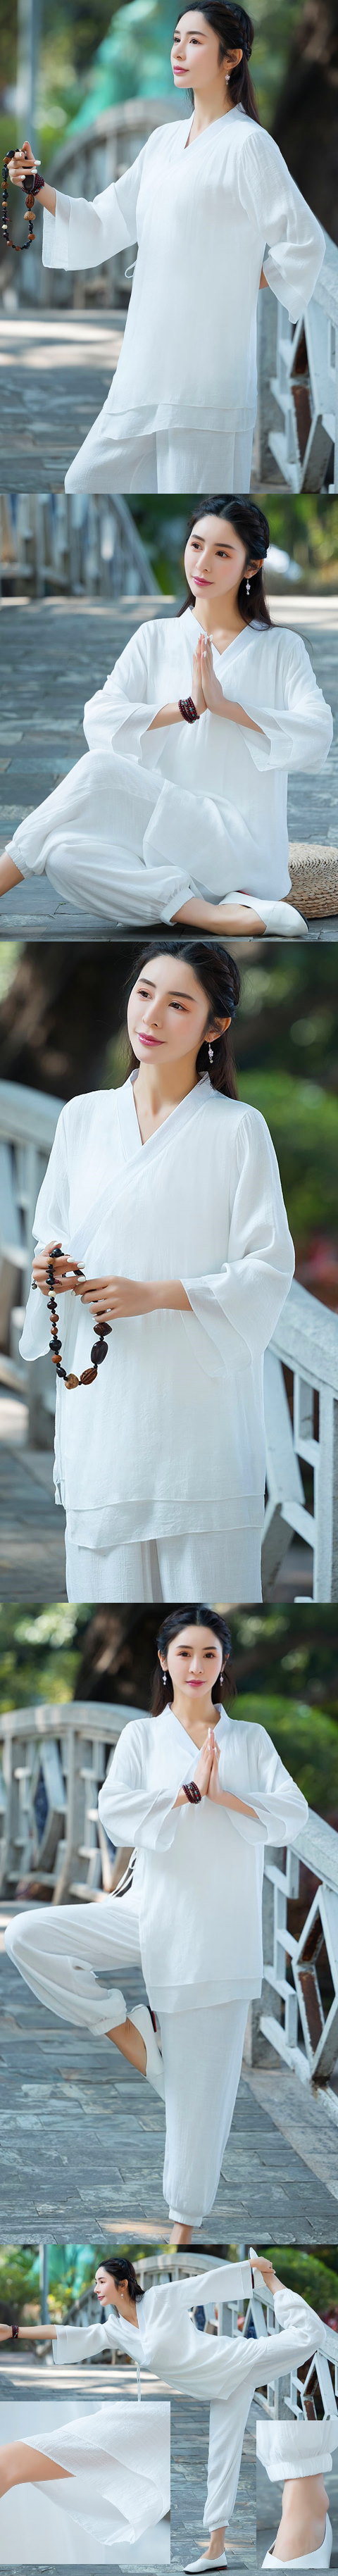 Long-sleeve Cotton Linen Zen/Chic Ethnic Suit (RM)